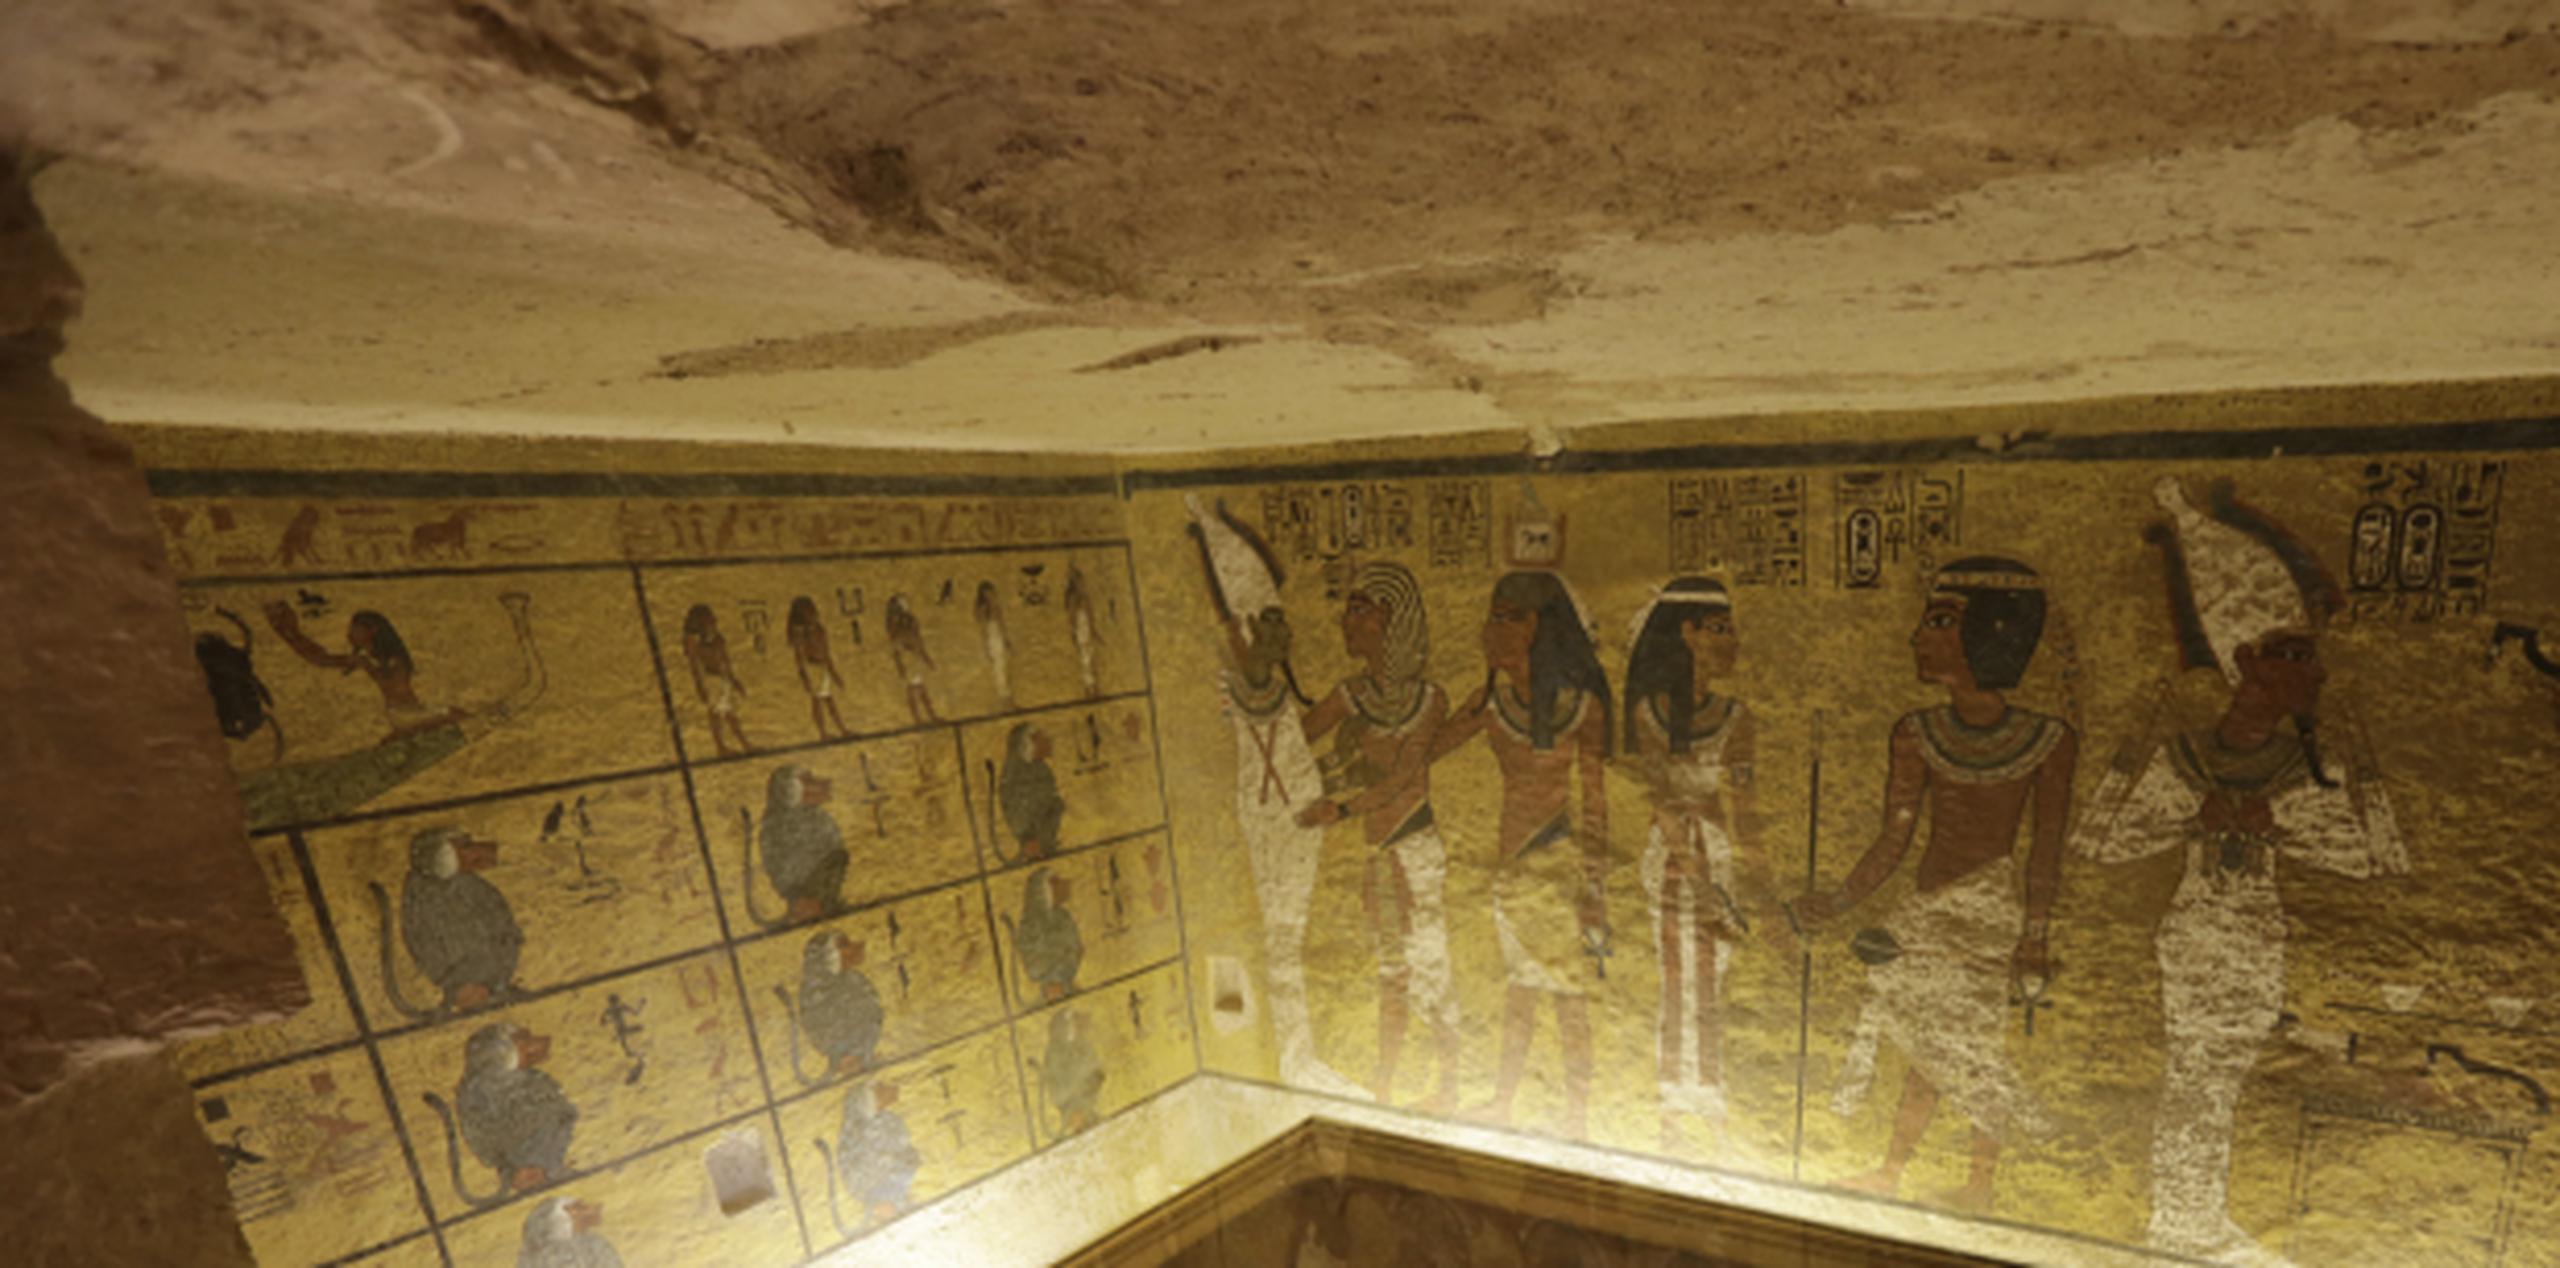 Las inscripciones de las paredes apuntan a que las tumbas se remontan a la dinastía de faraones que gobernaron hace unos 3.500 años. (Archivo)